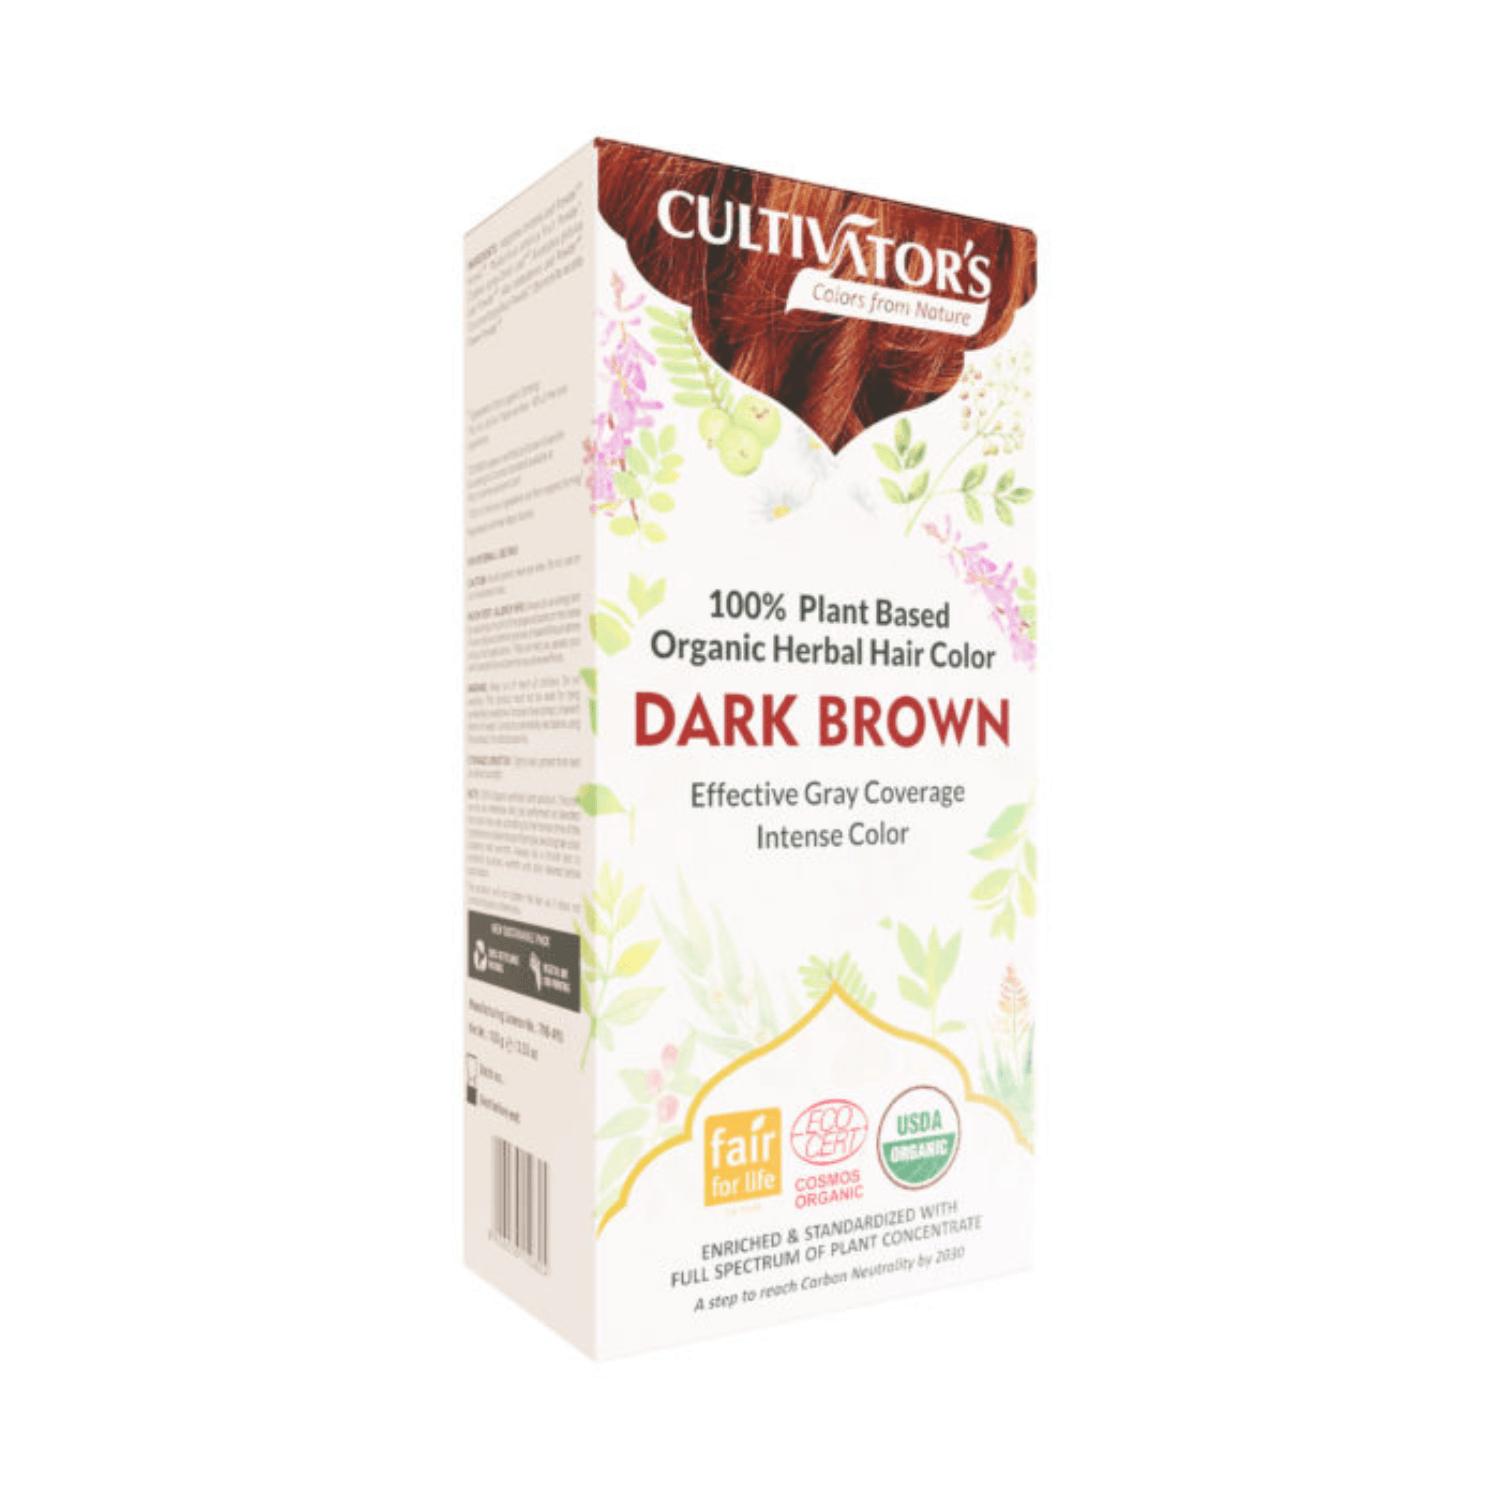 Cultivators Organic Herbal Hair Color, Dark Brown